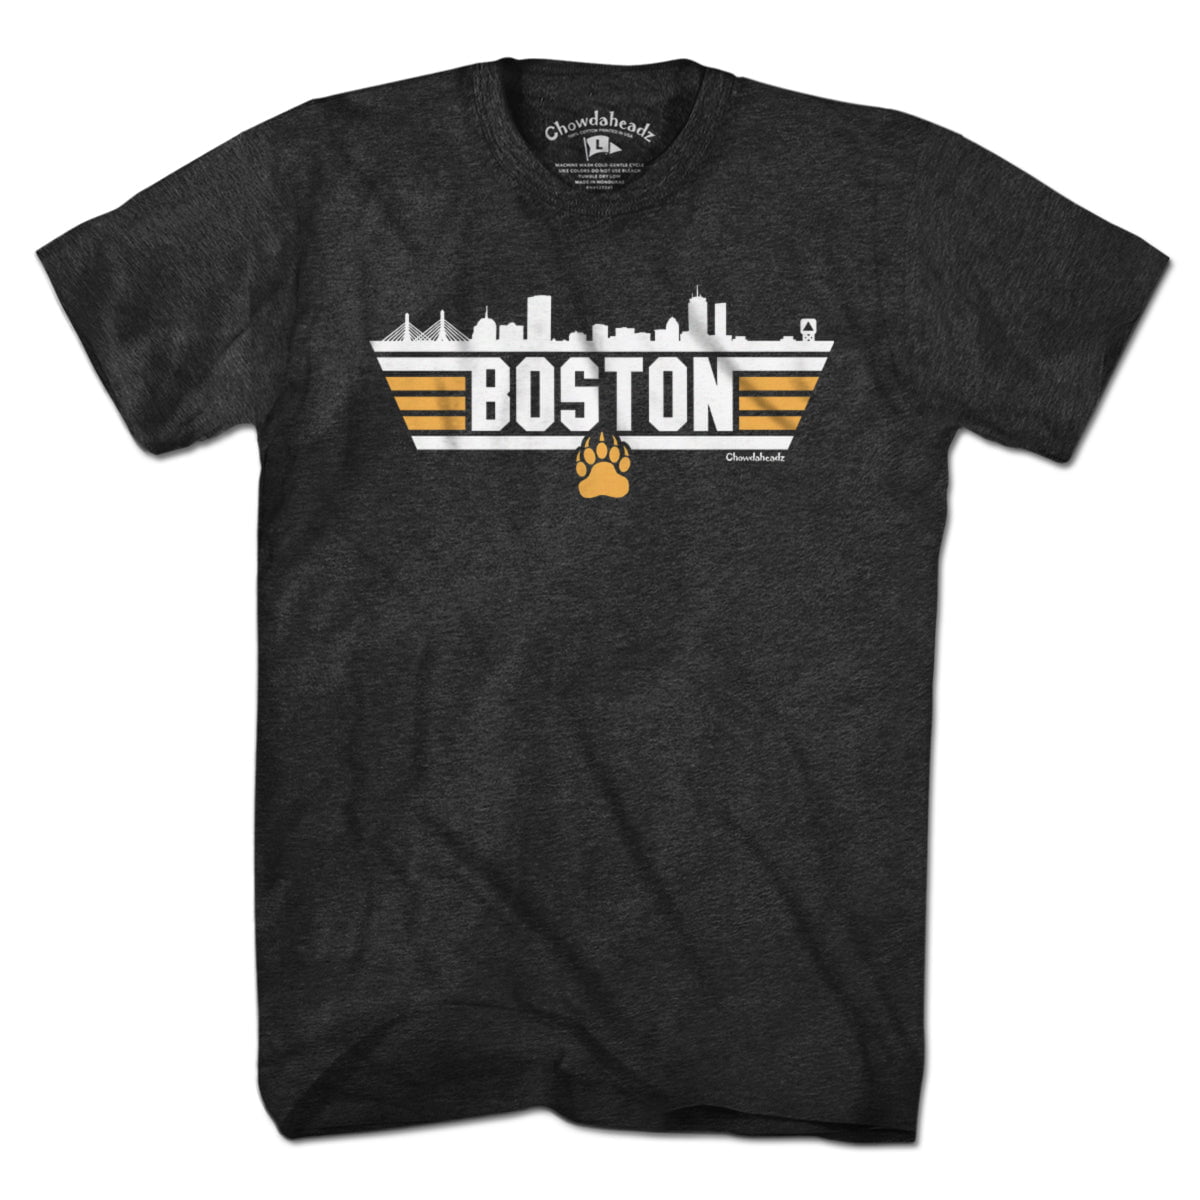 Boston Top Town Bear Claw T-Shirt - Chowdaheadz